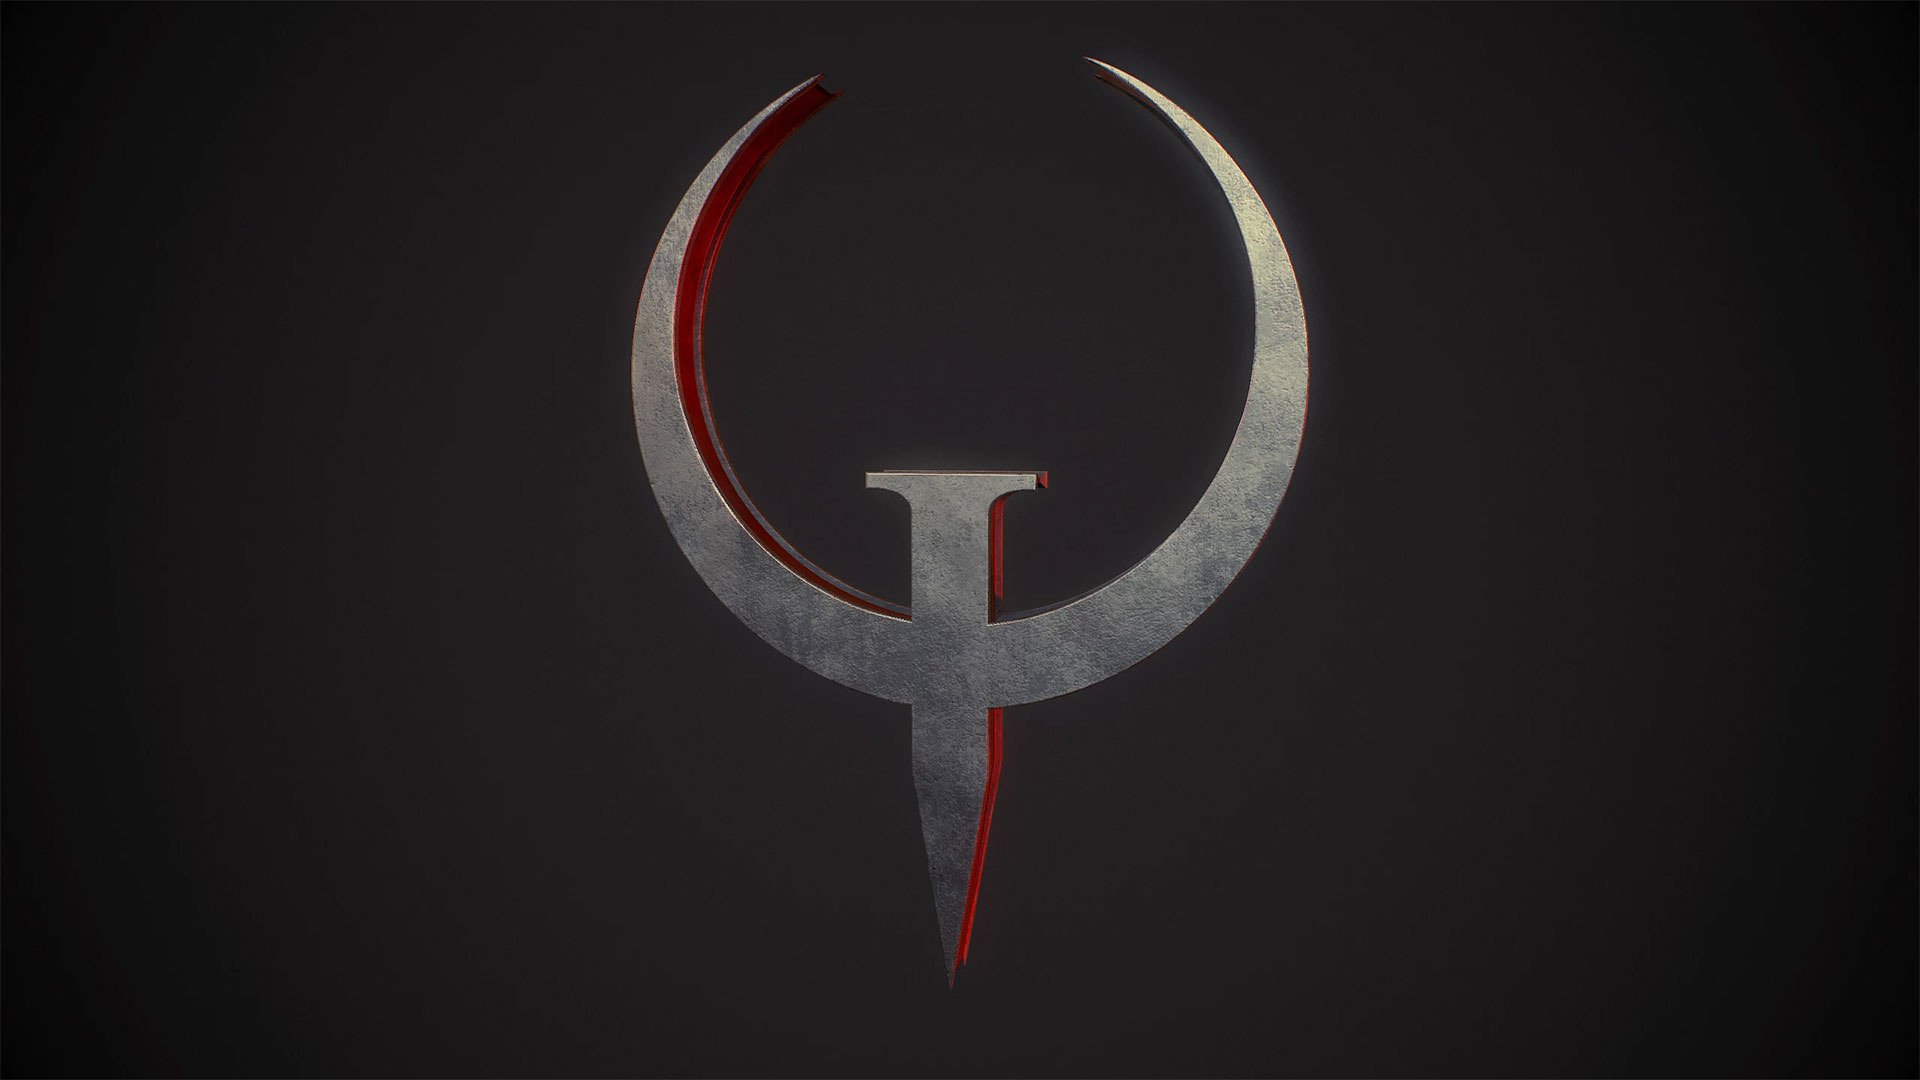 احتمال عرضه ریمستر بازی Quake برای کنسول های نسل قدیم و جدید